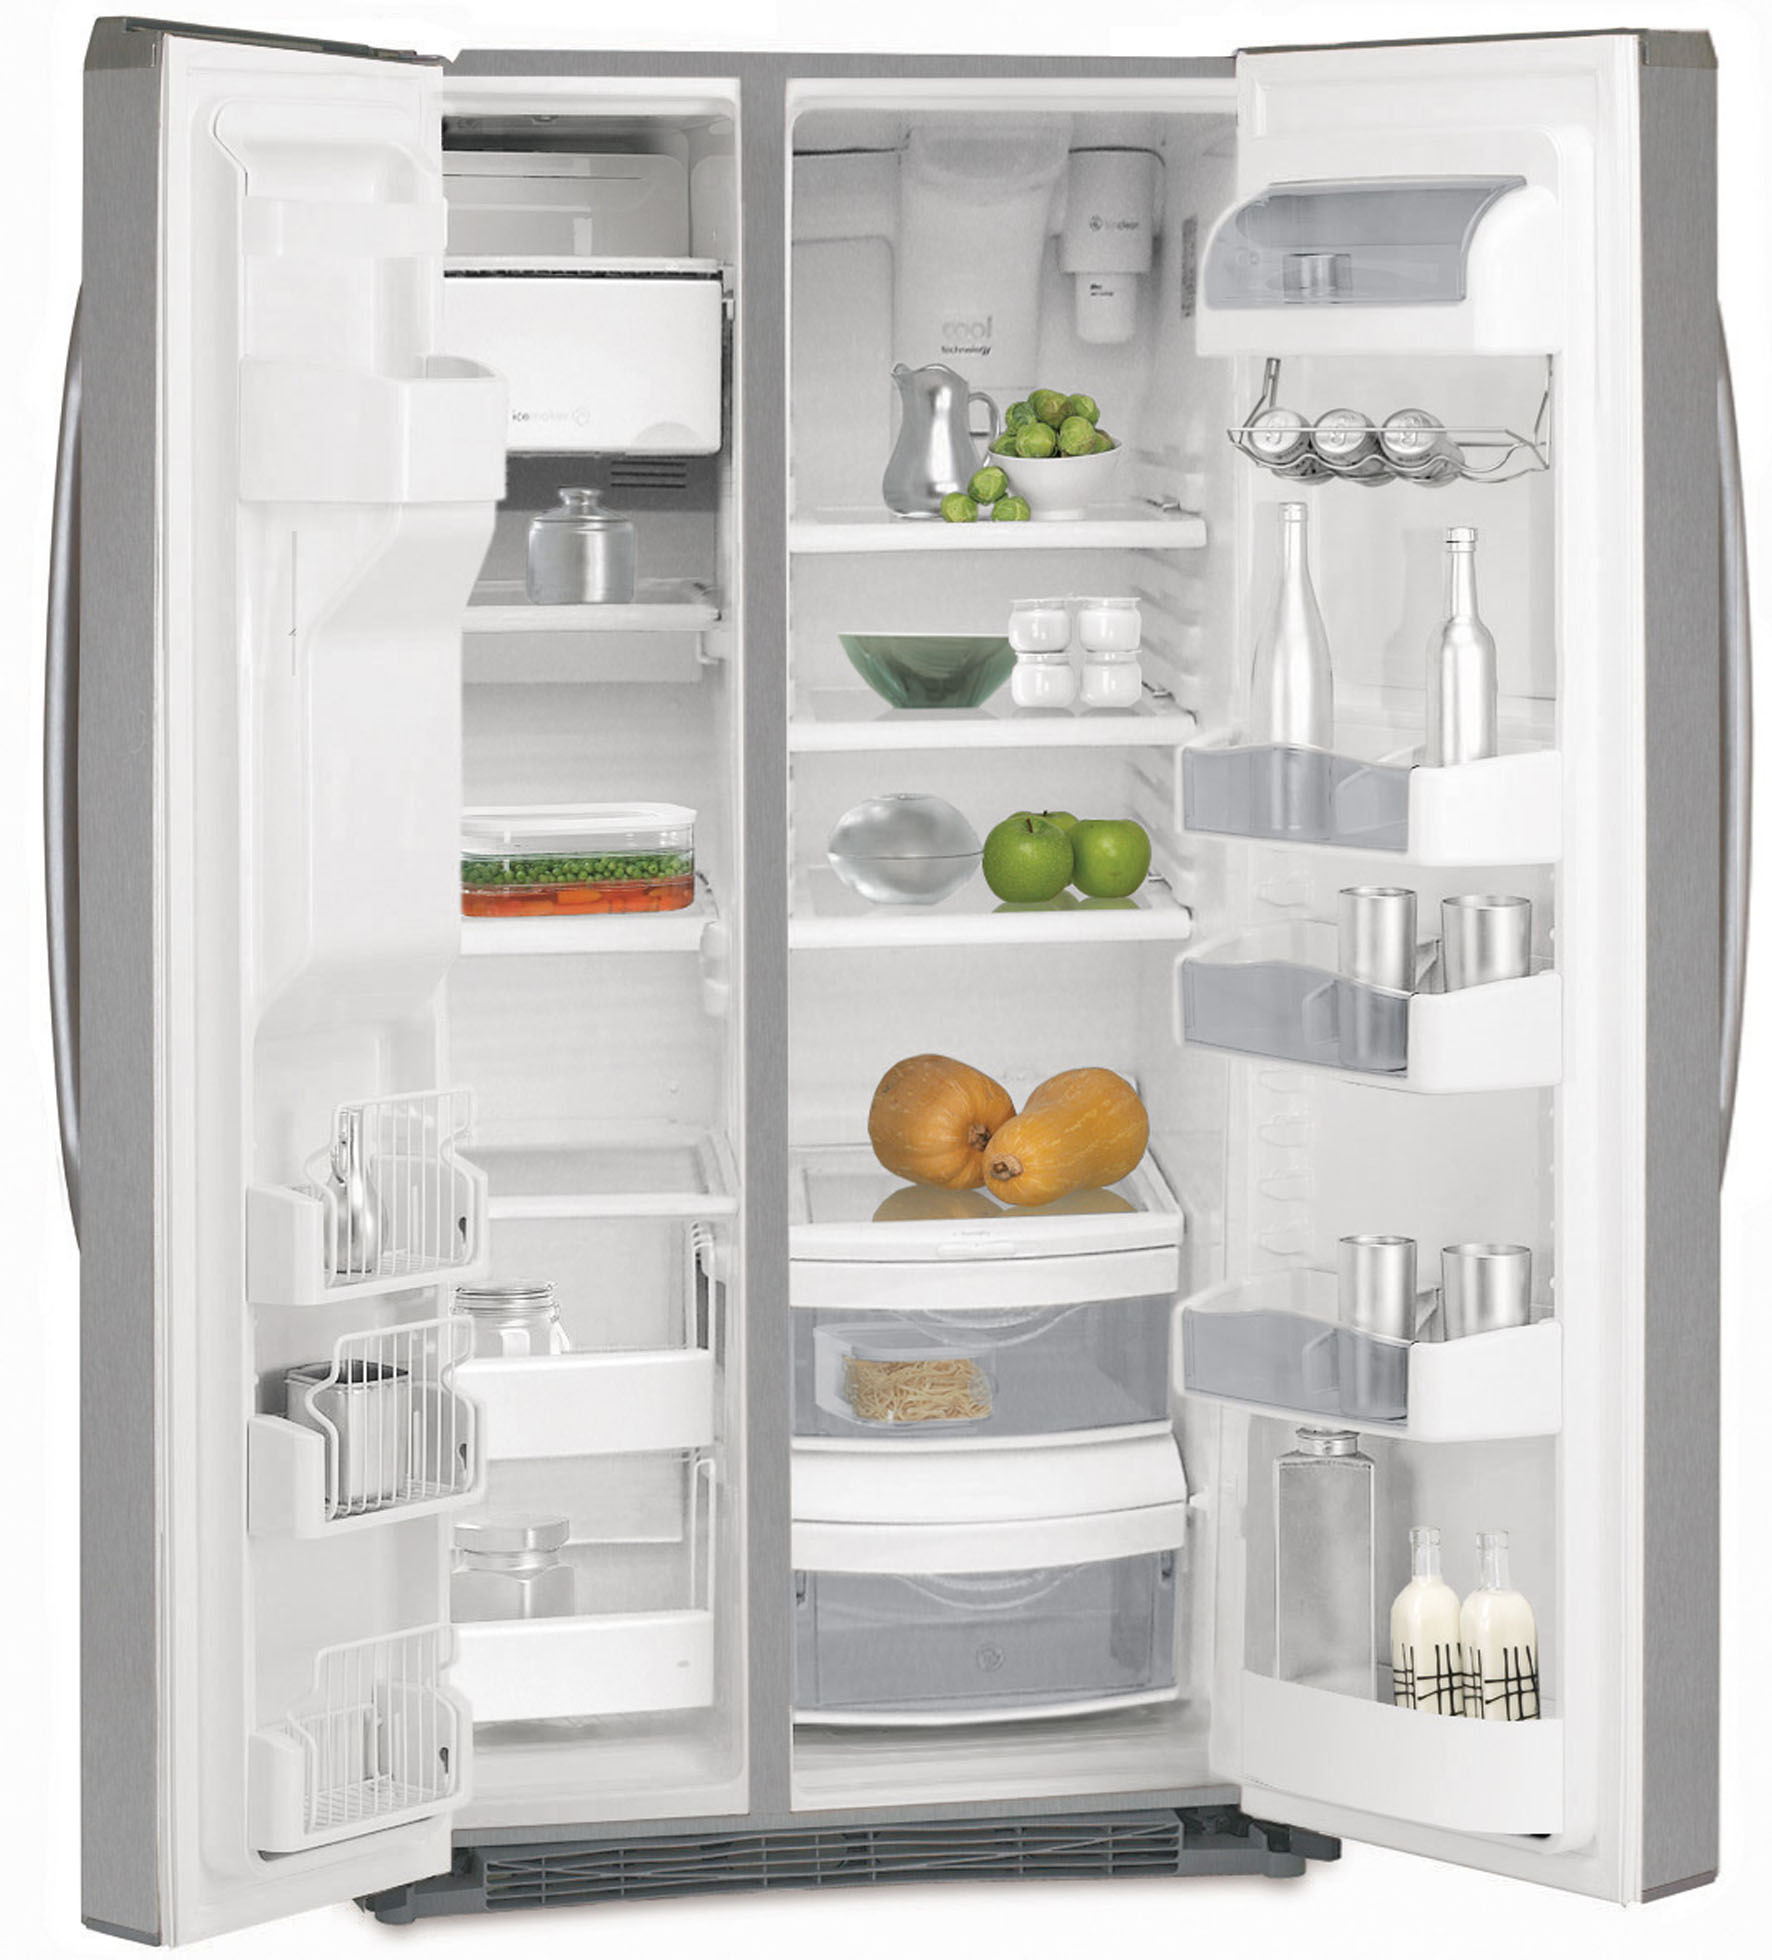 El frigorífico que necesitas - 🛁 DECOYBA 🚿 Reforma de Baños y Cocinas